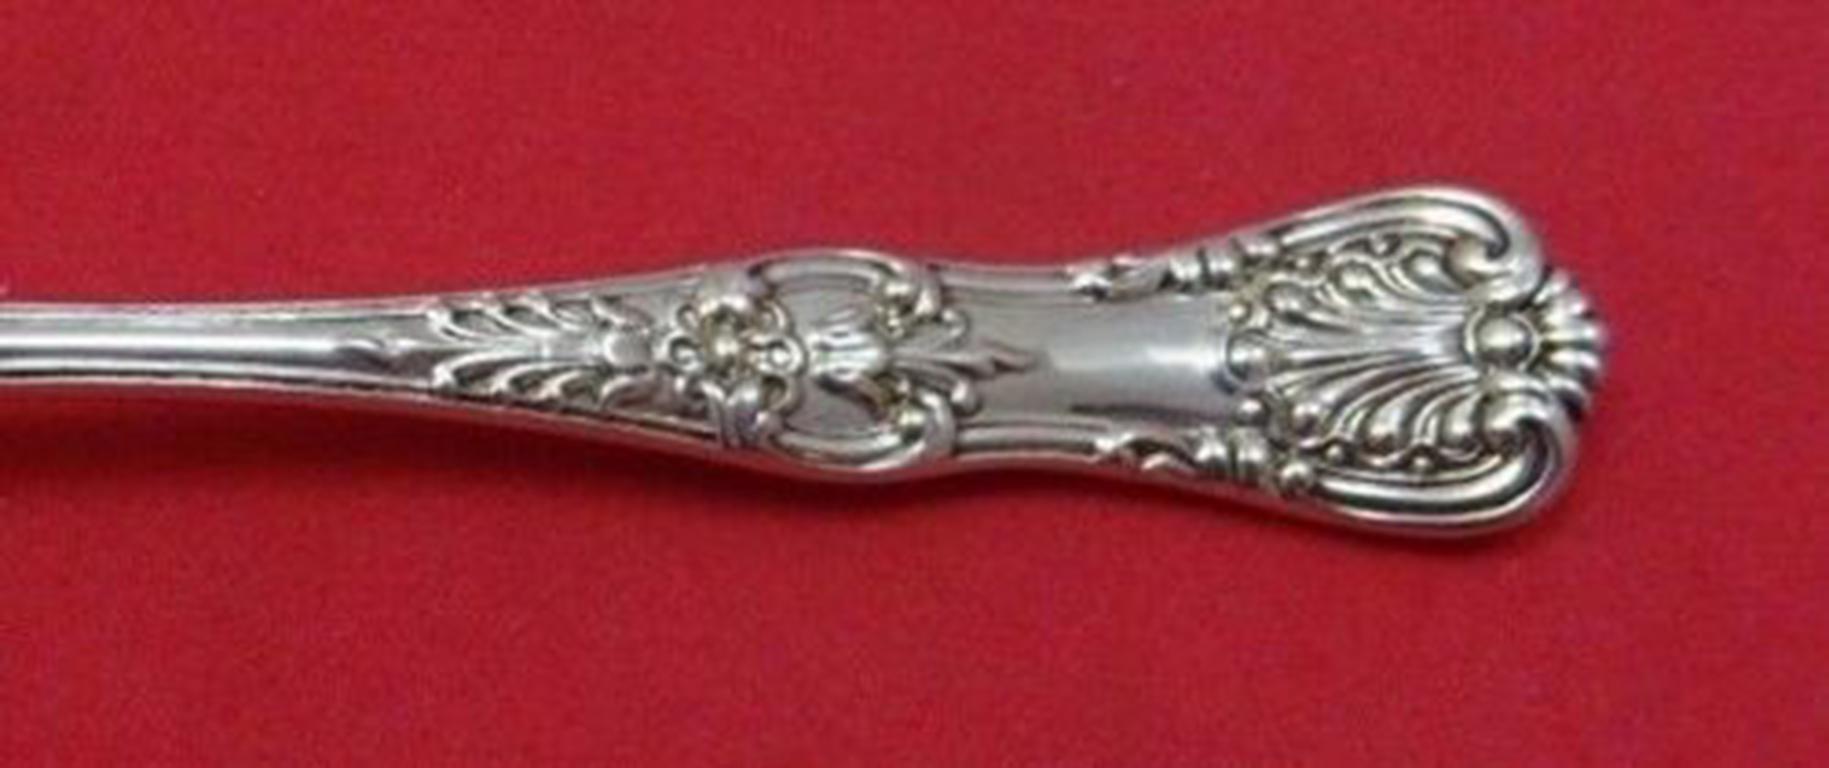 Sterling silver demitasse spoon, 4